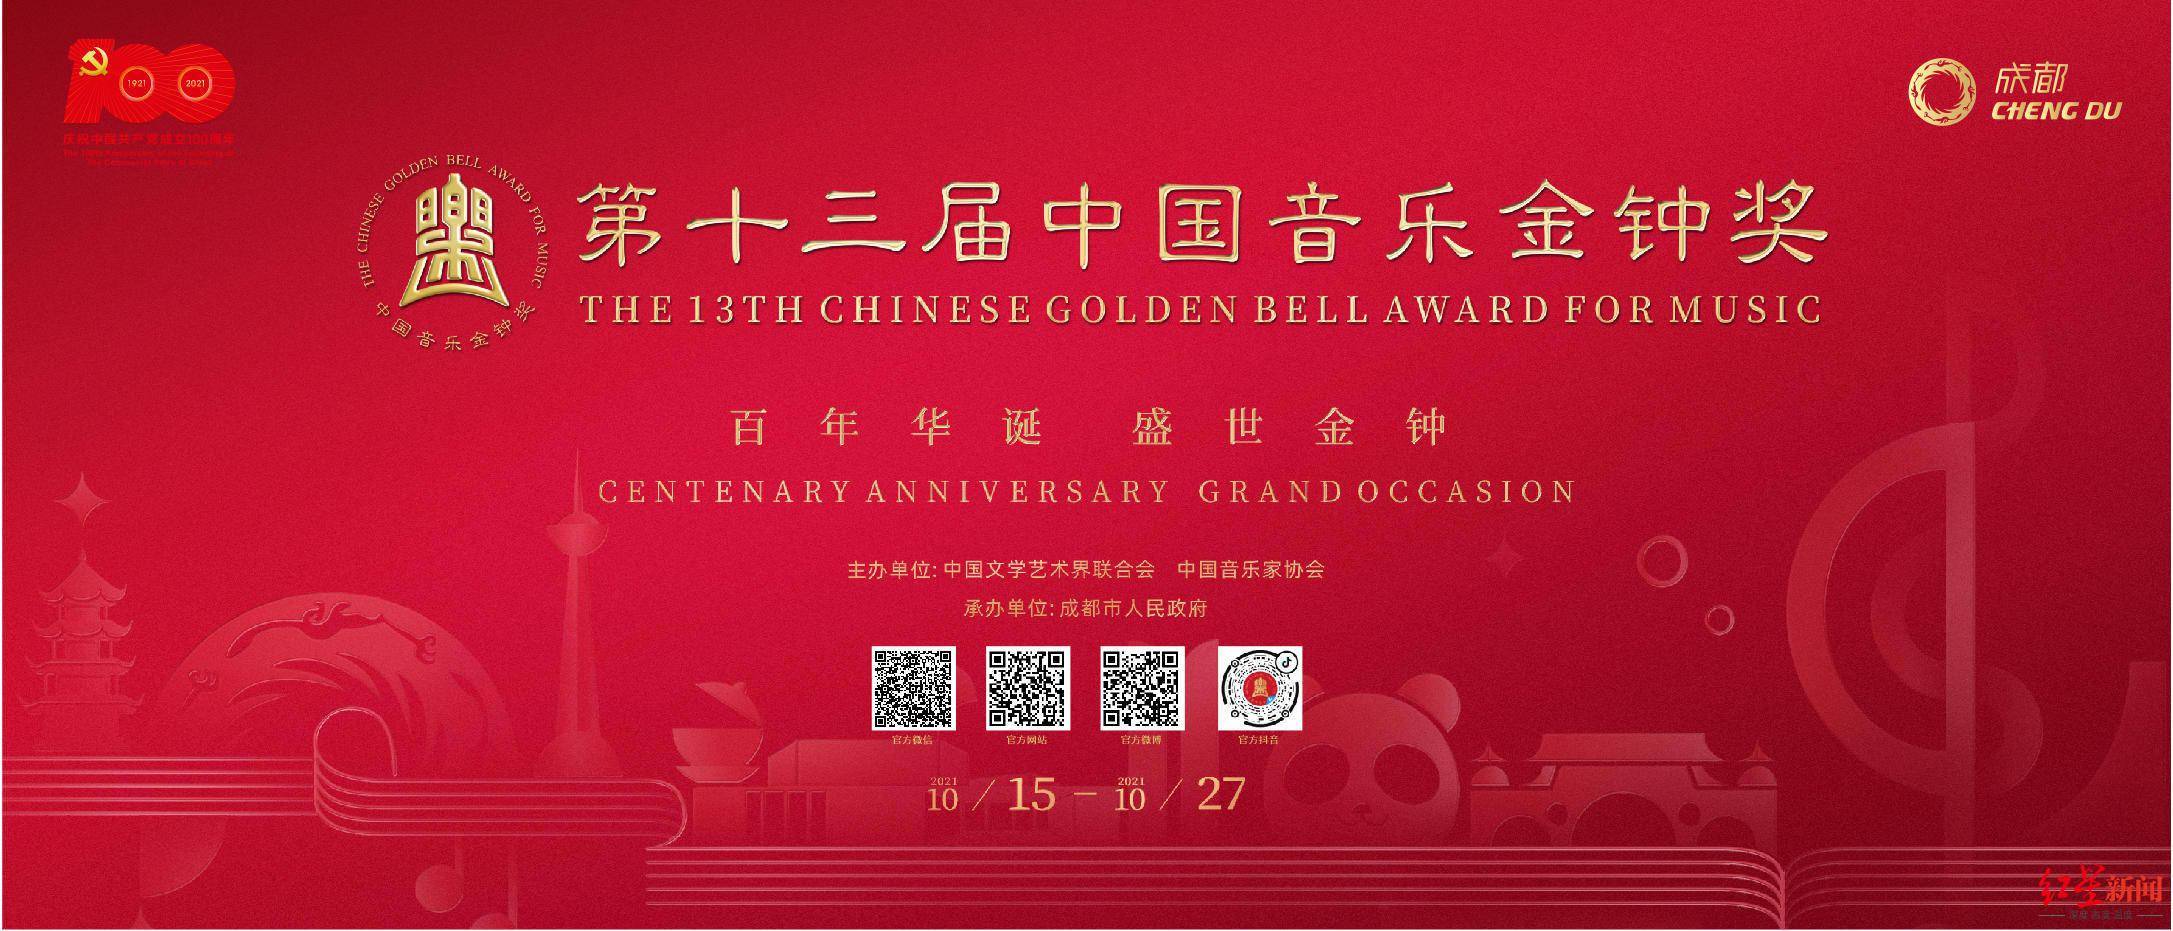 第十三届中国音乐金钟奖开票参与互动将有机会免费观赏演出